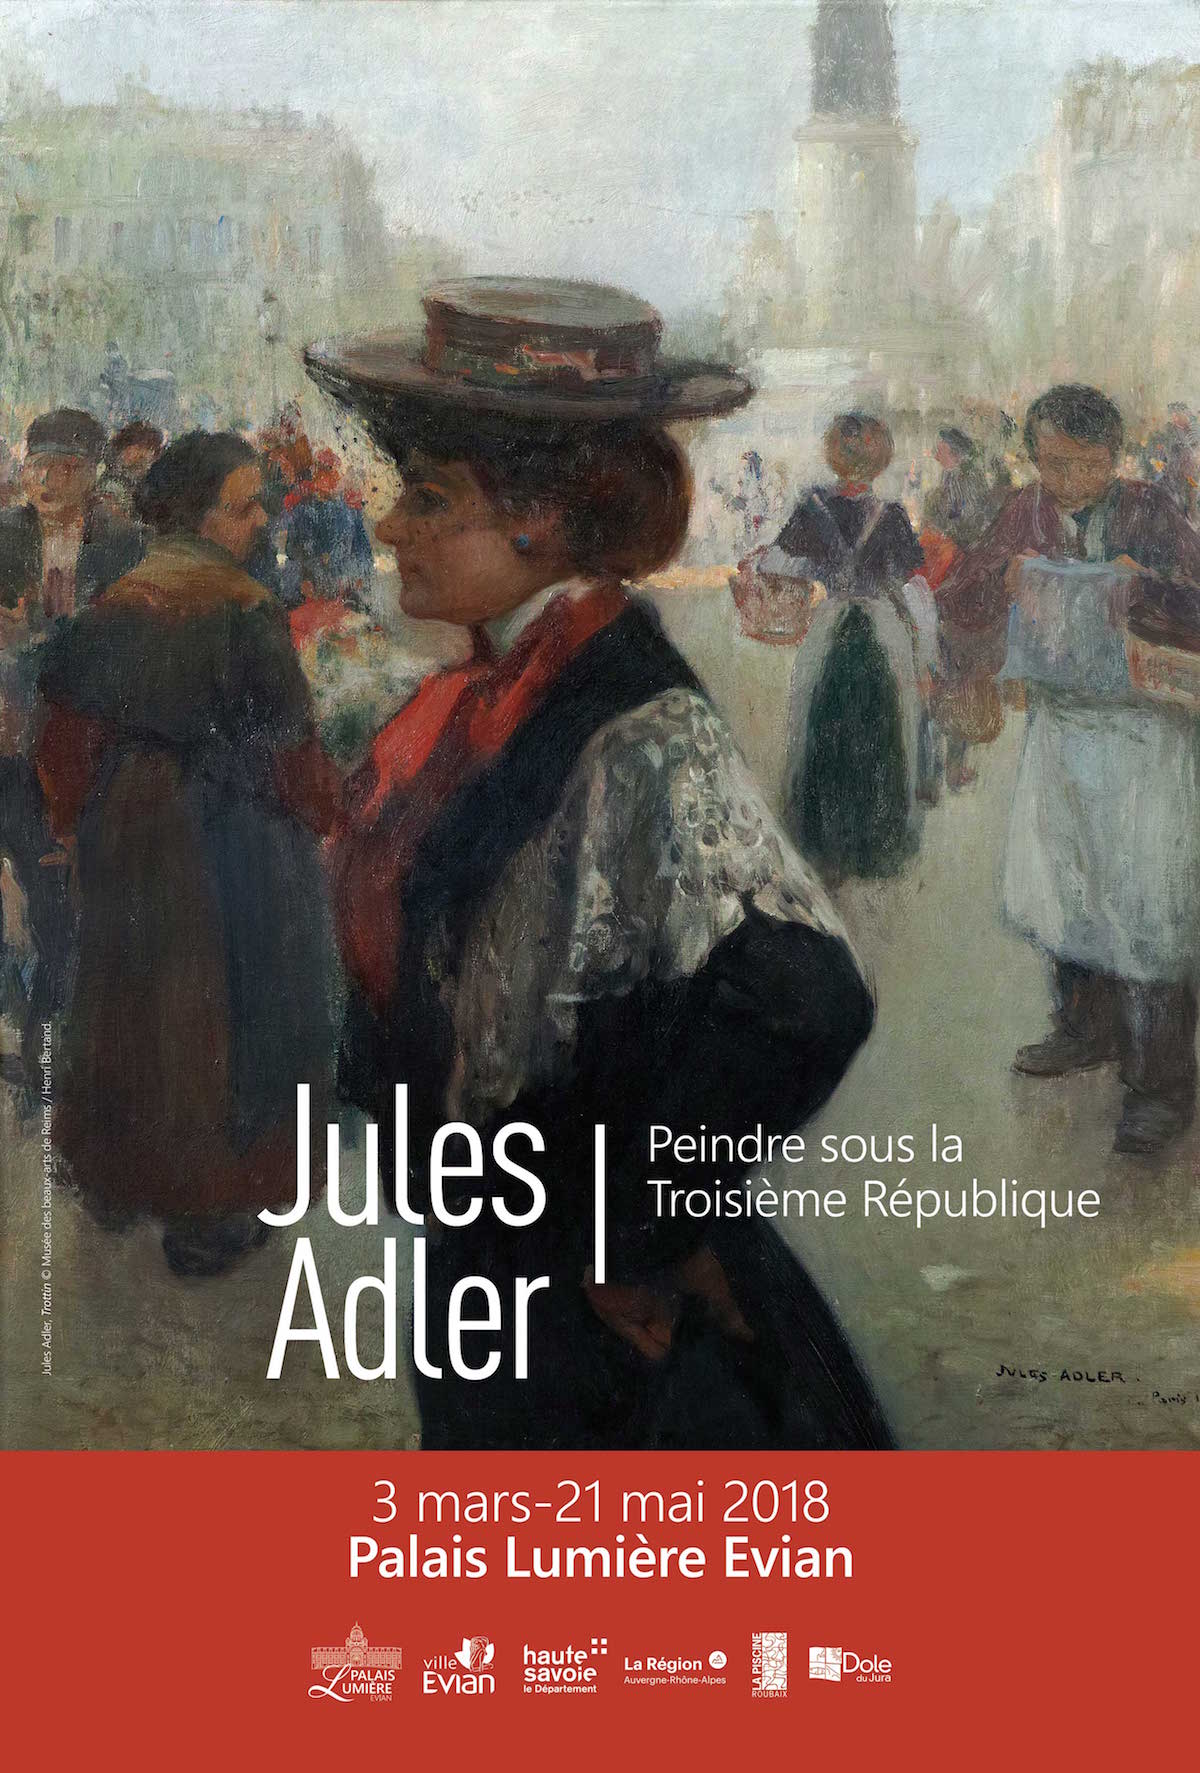 Affiche officielle Jules Adler Trottin ©Musée des Beaux-Arts de Reims